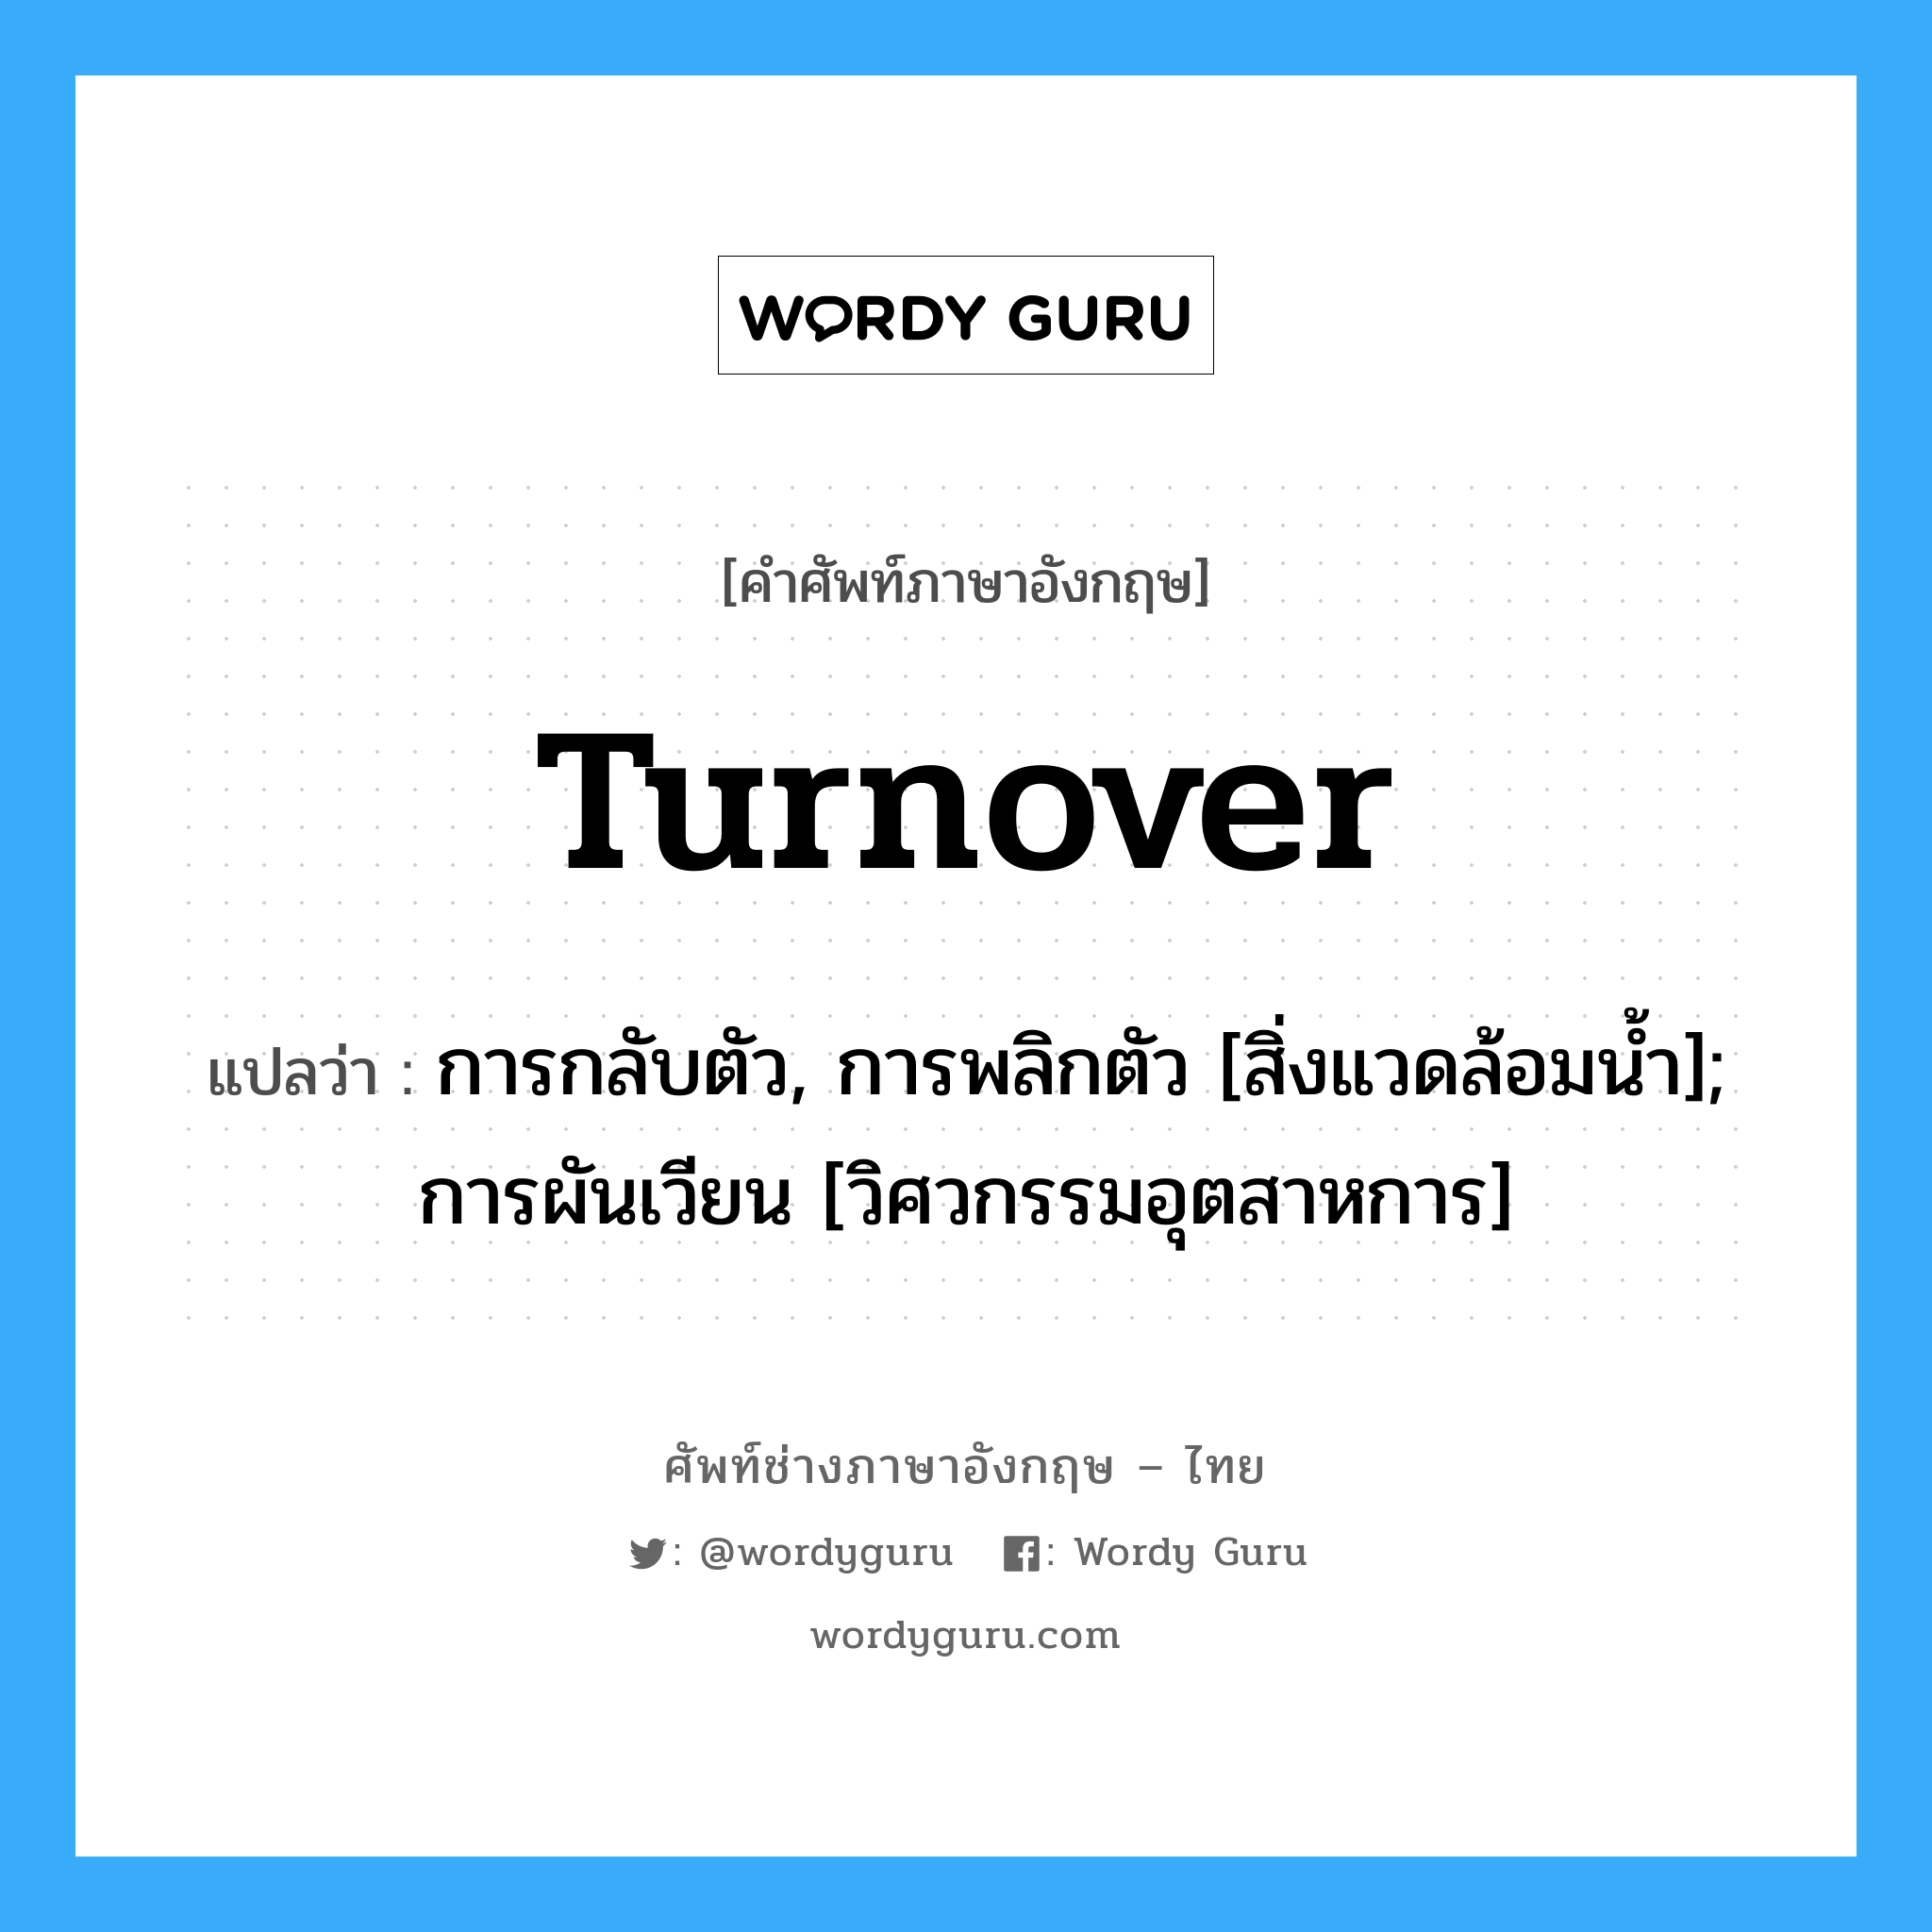 turnover แปลว่า?, คำศัพท์ช่างภาษาอังกฤษ - ไทย turnover คำศัพท์ภาษาอังกฤษ turnover แปลว่า การกลับตัว, การพลิกตัว [สิ่งแวดล้อมน้ำ]; การผันเวียน [วิศวกรรมอุตสาหการ]